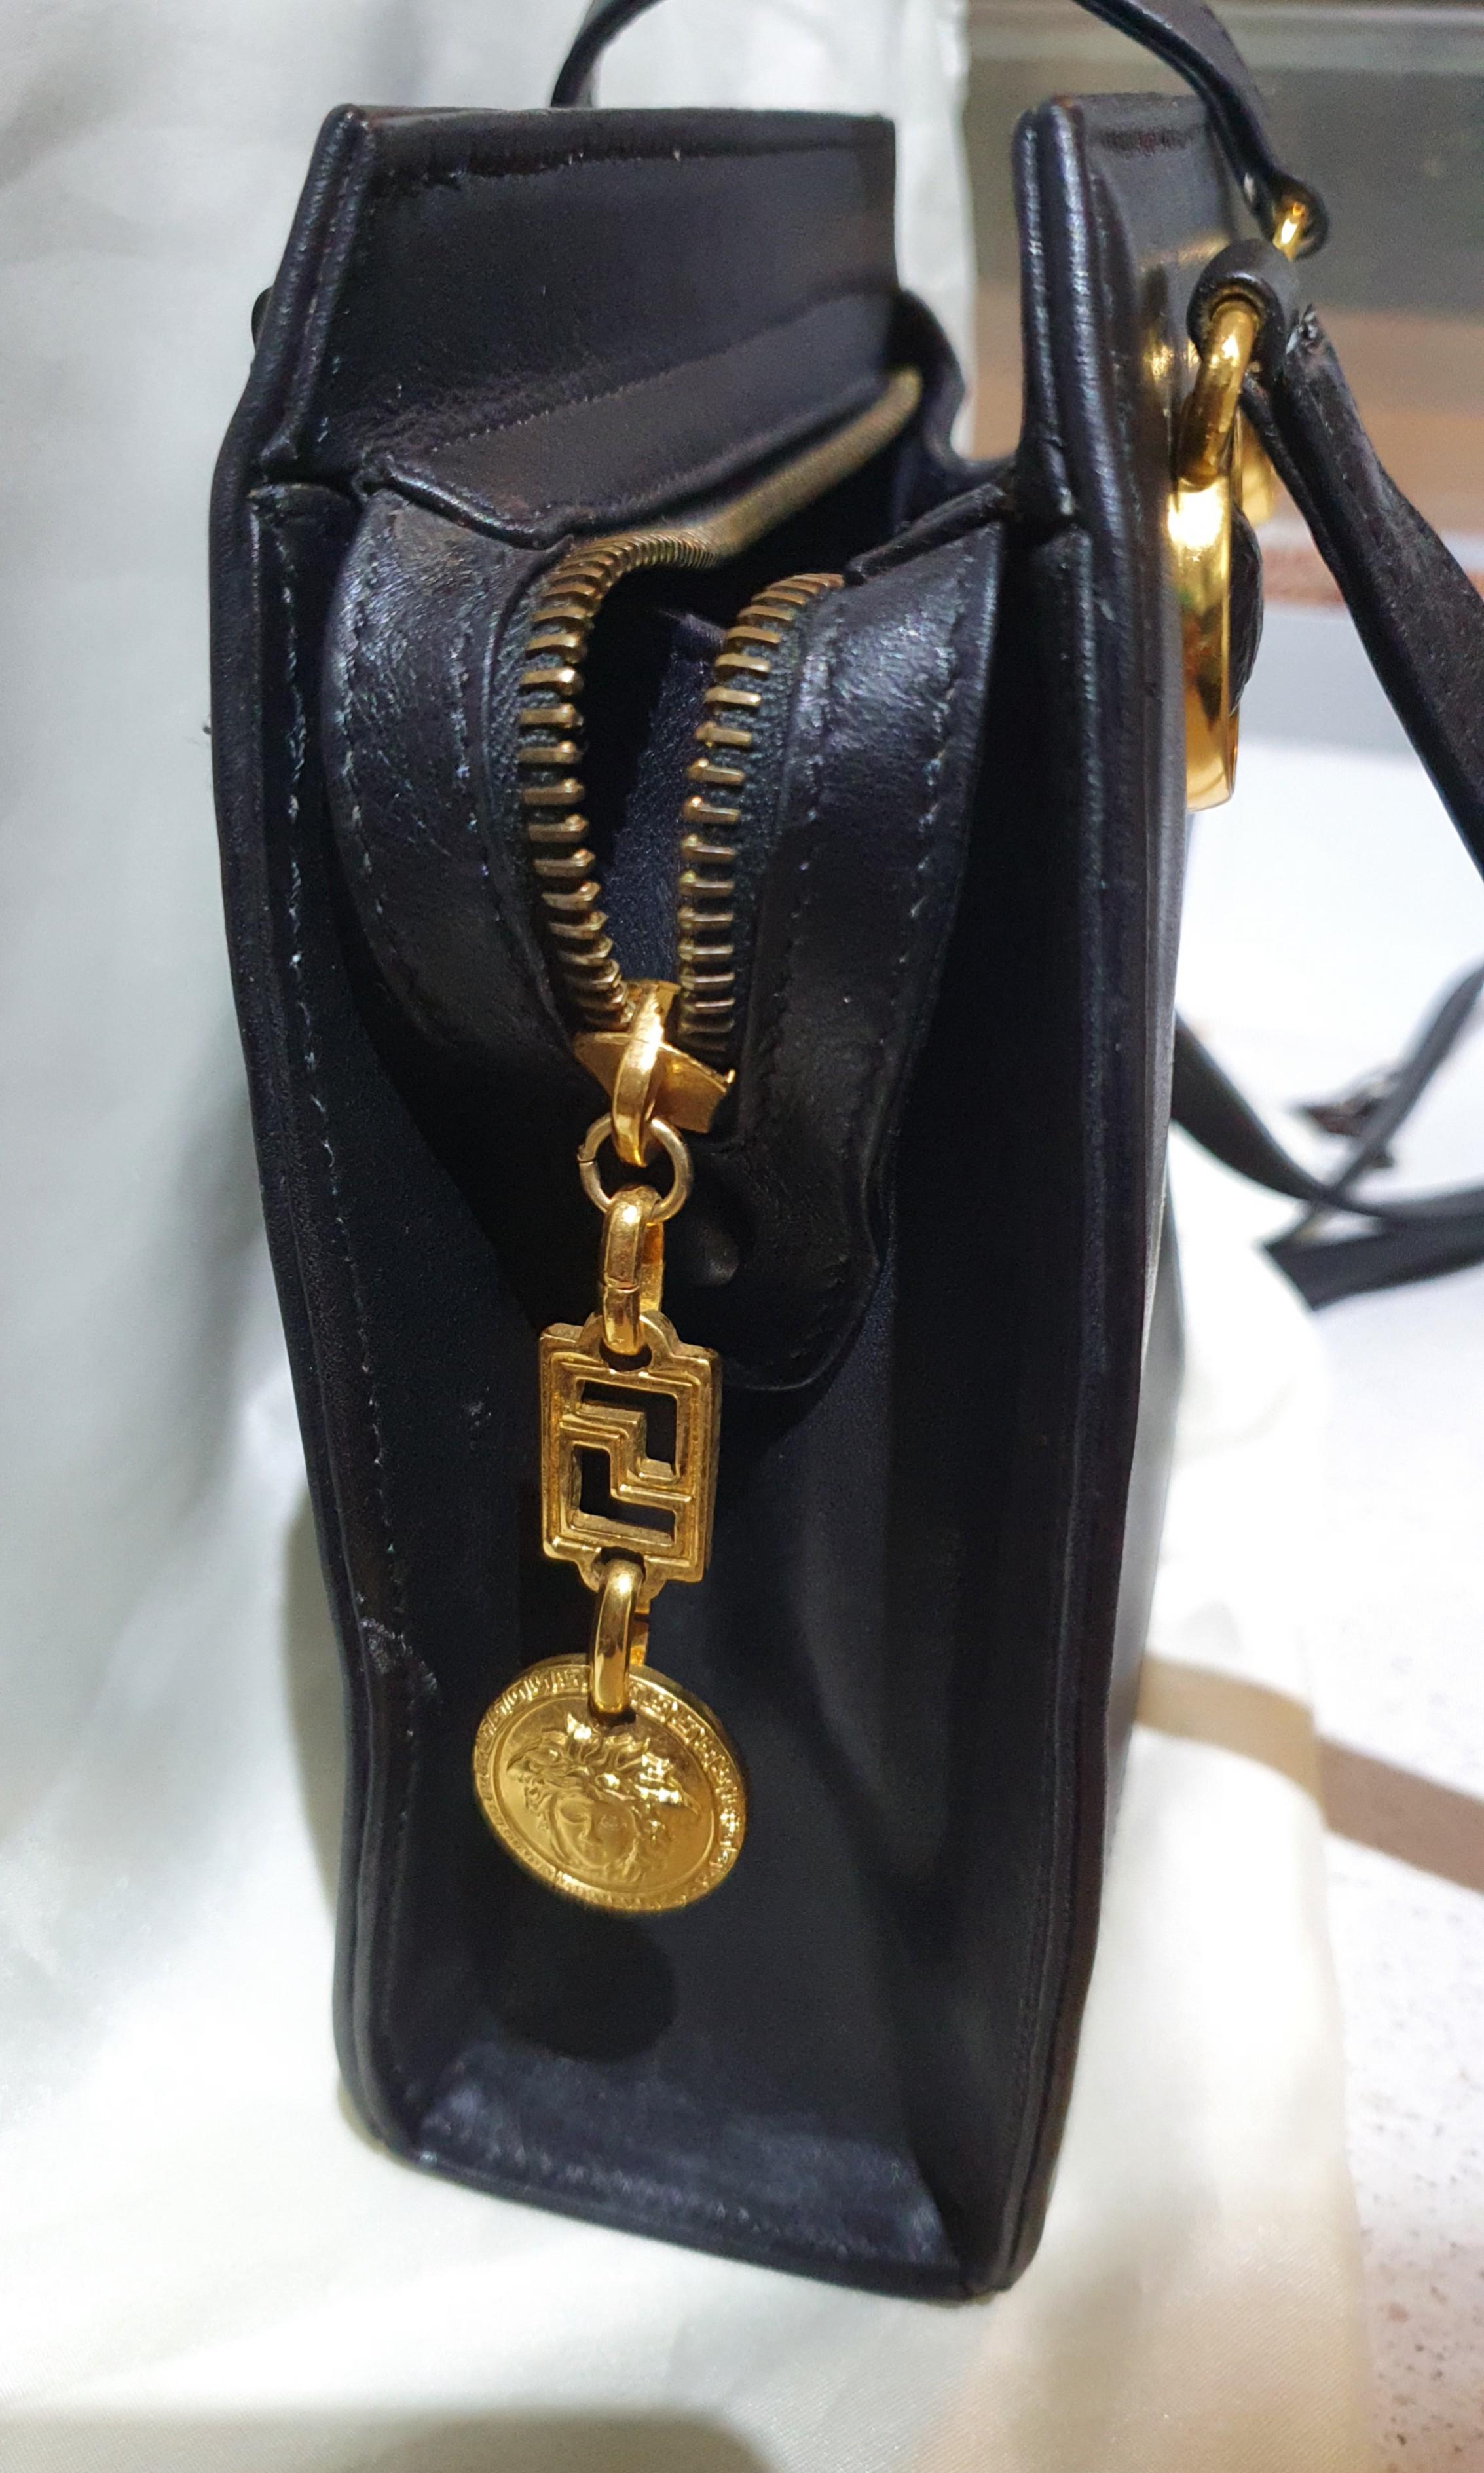 Vintage Gianni Versace medusa head Bracelet – Secondista